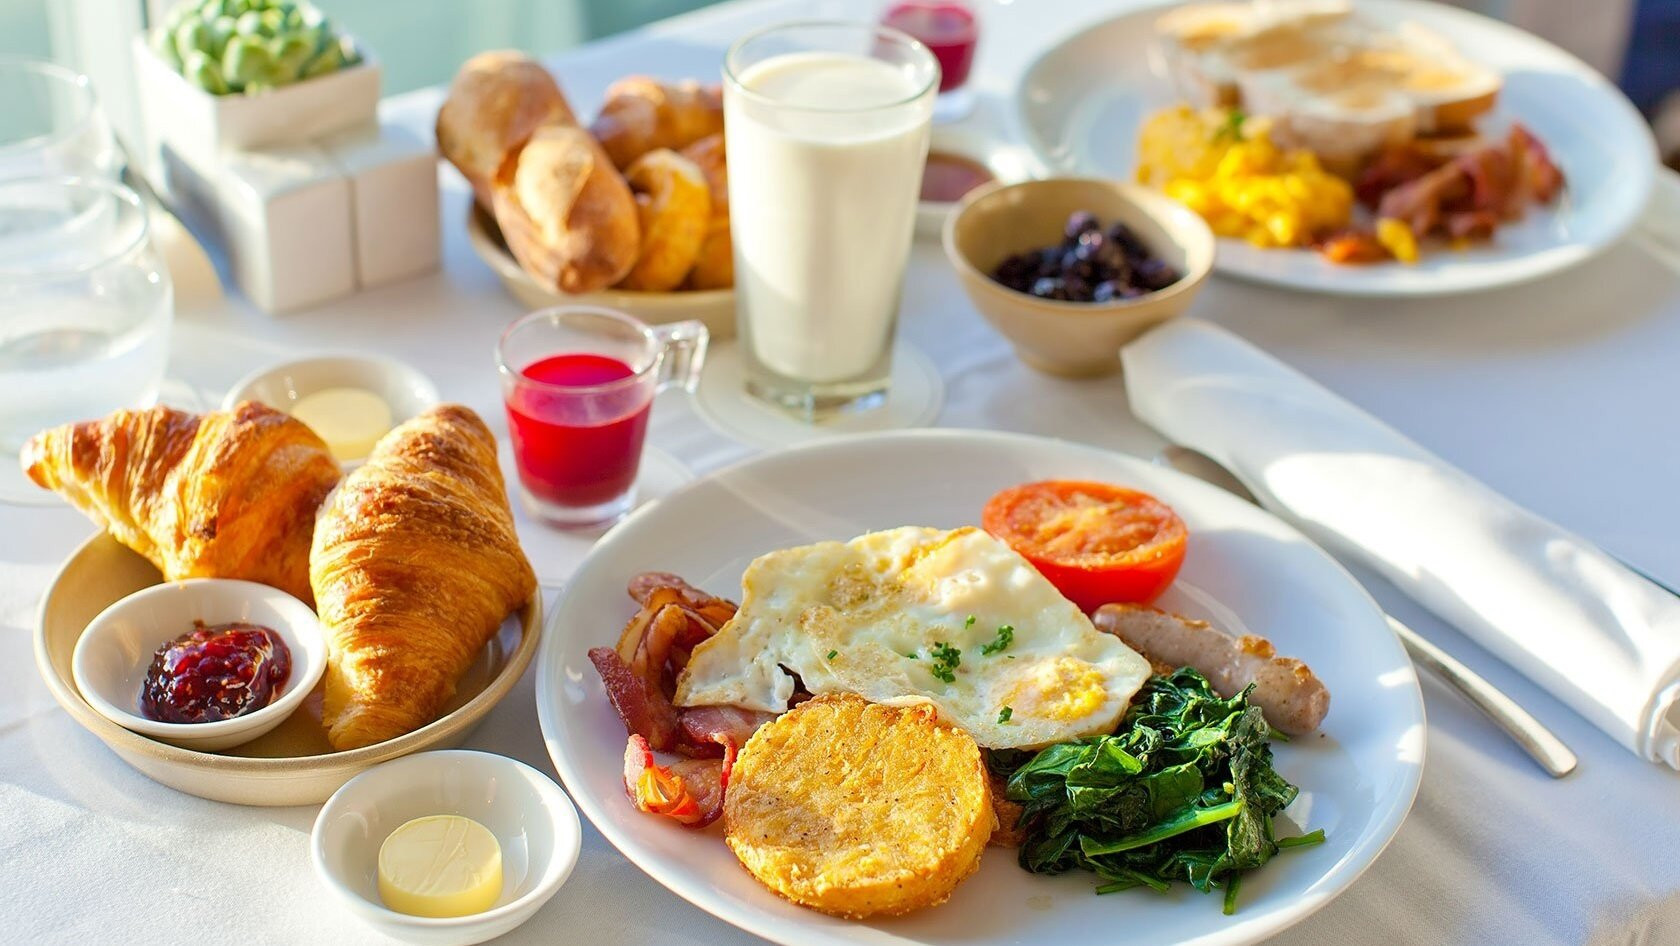 7h11 là thời điểm lý tưởng cho bữa sáng.